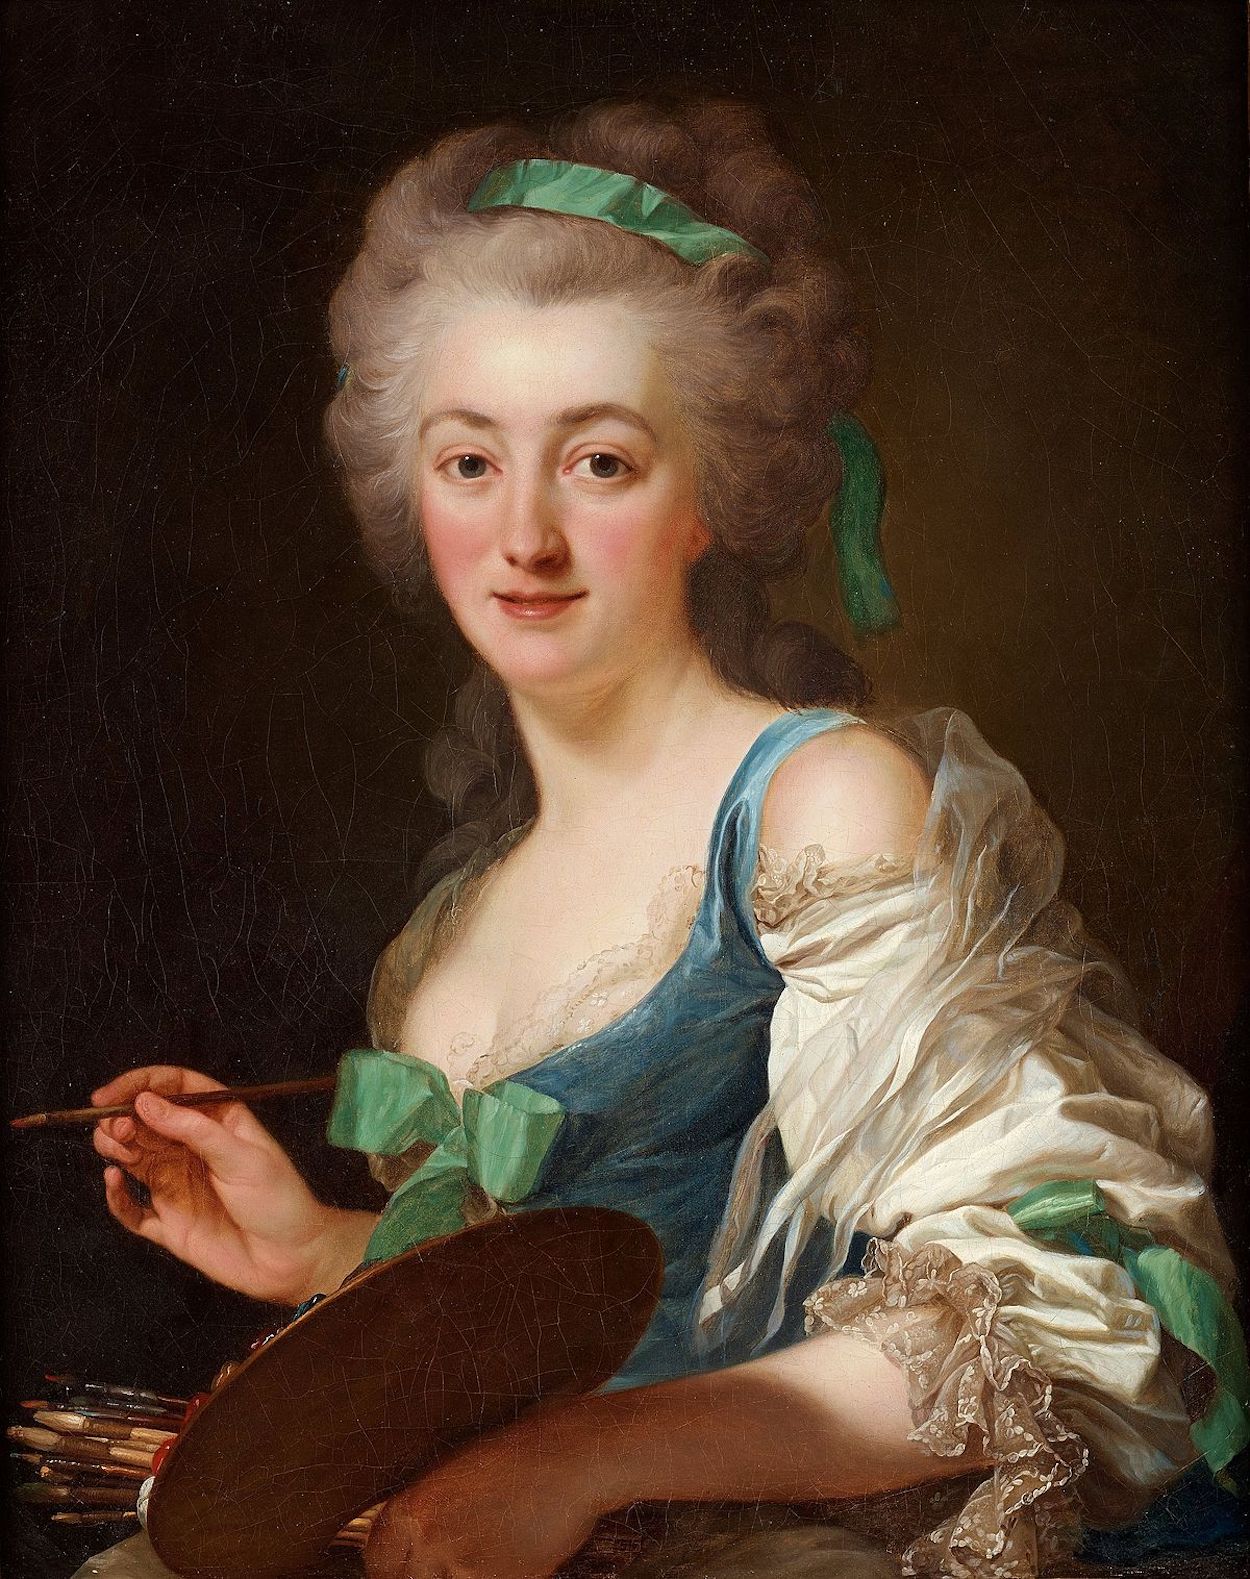 安妮 瓦莱德·卡斯特 - 1744年12月21日 - 1818年2月28日